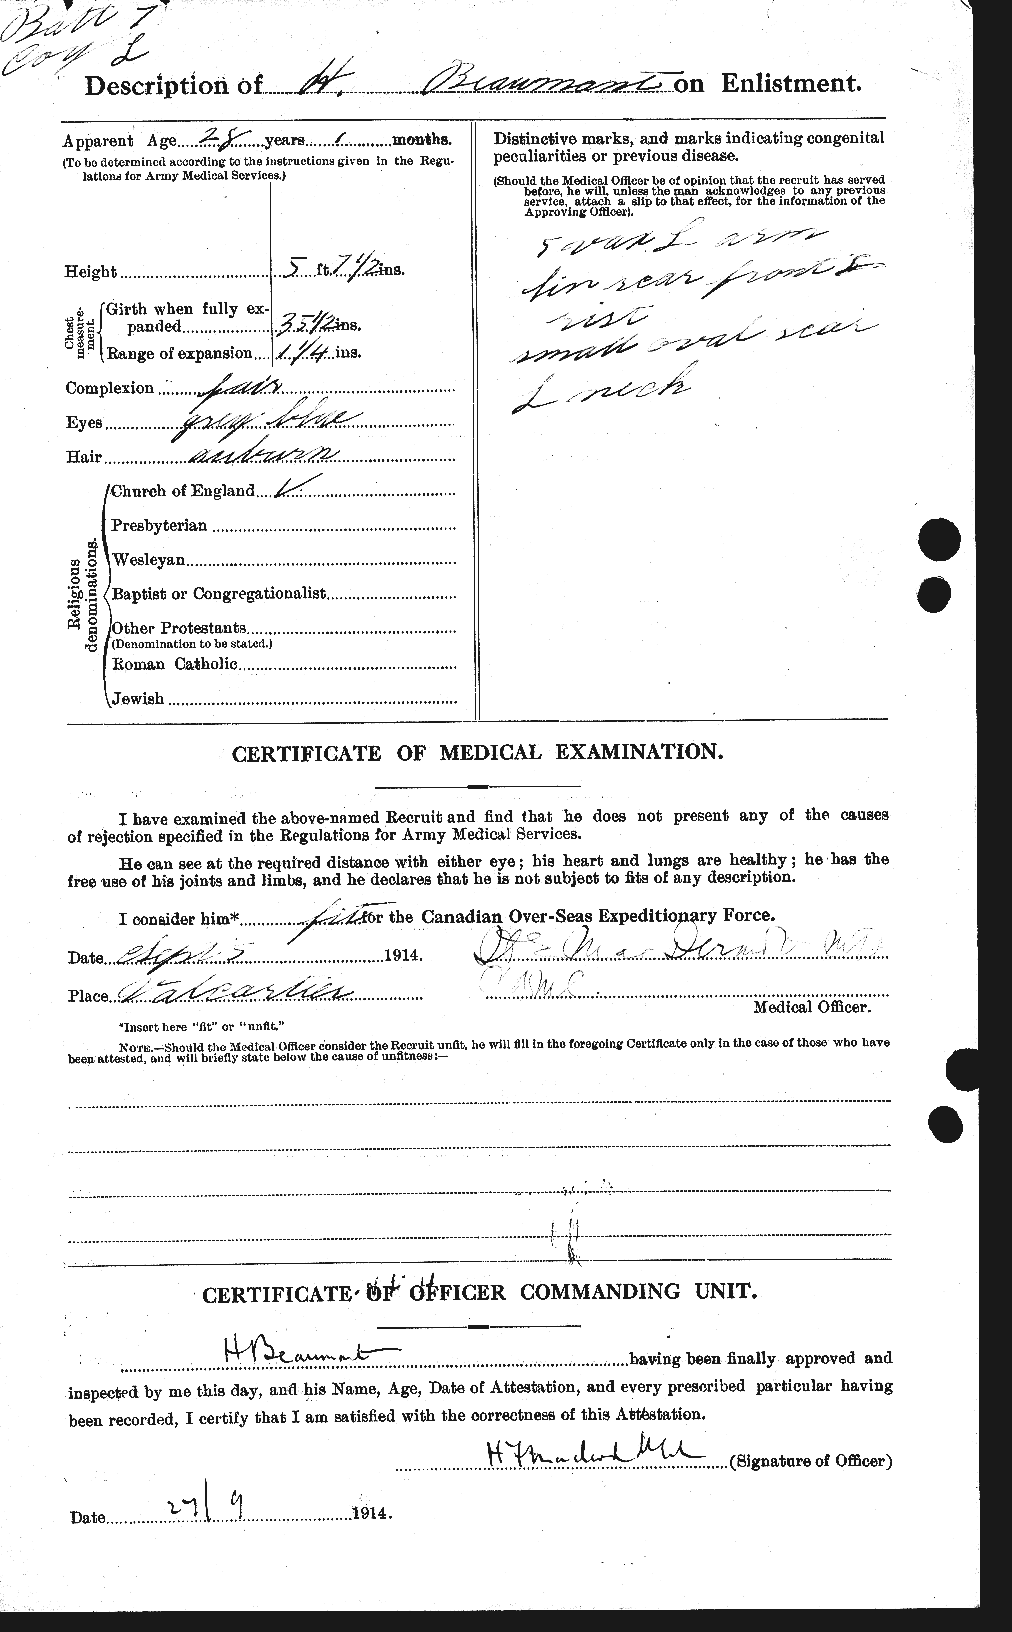 Dossiers du Personnel de la Première Guerre mondiale - CEC 231673b